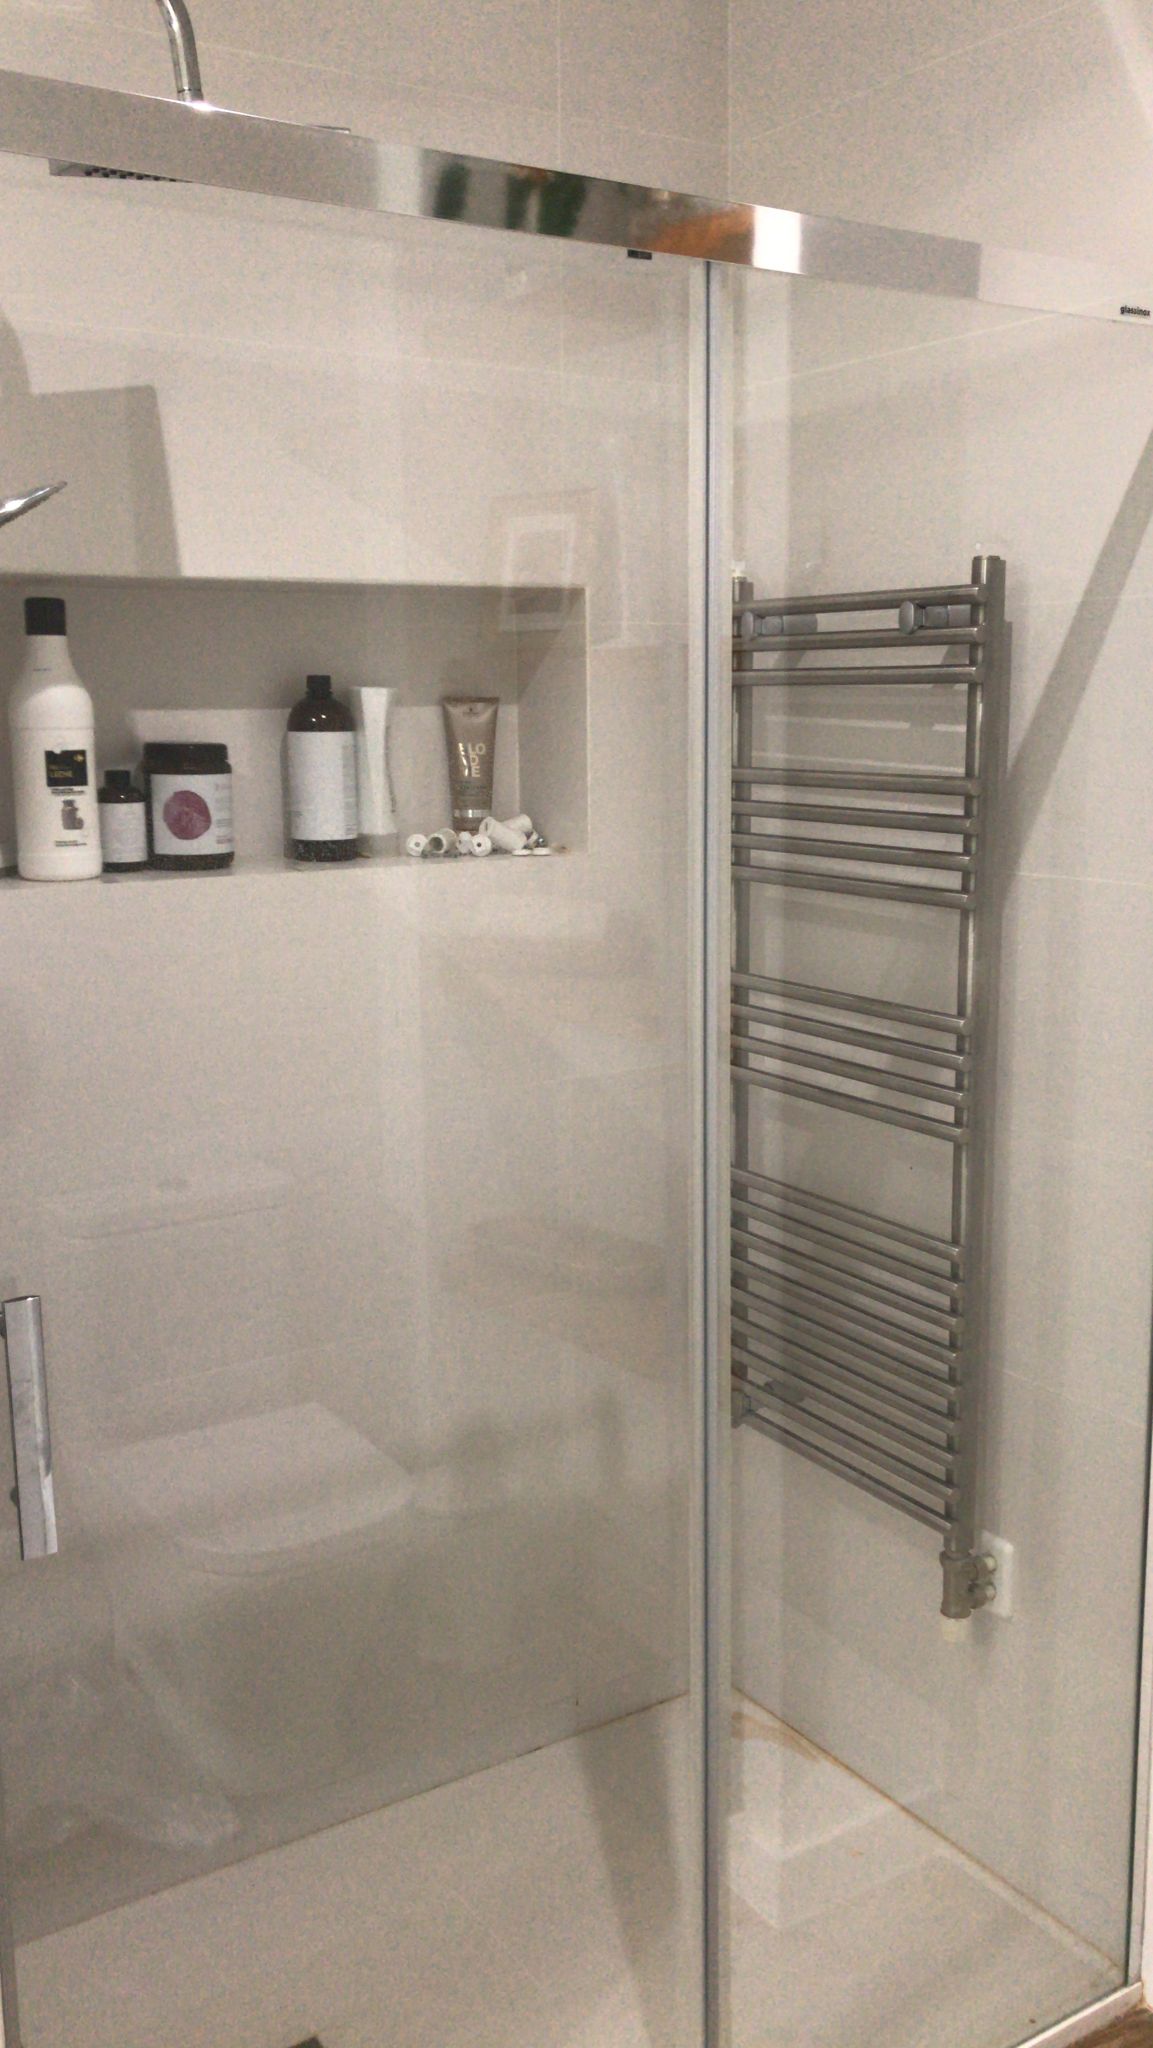 El radiador toallero, el accesorio de baño que se ha vuelto